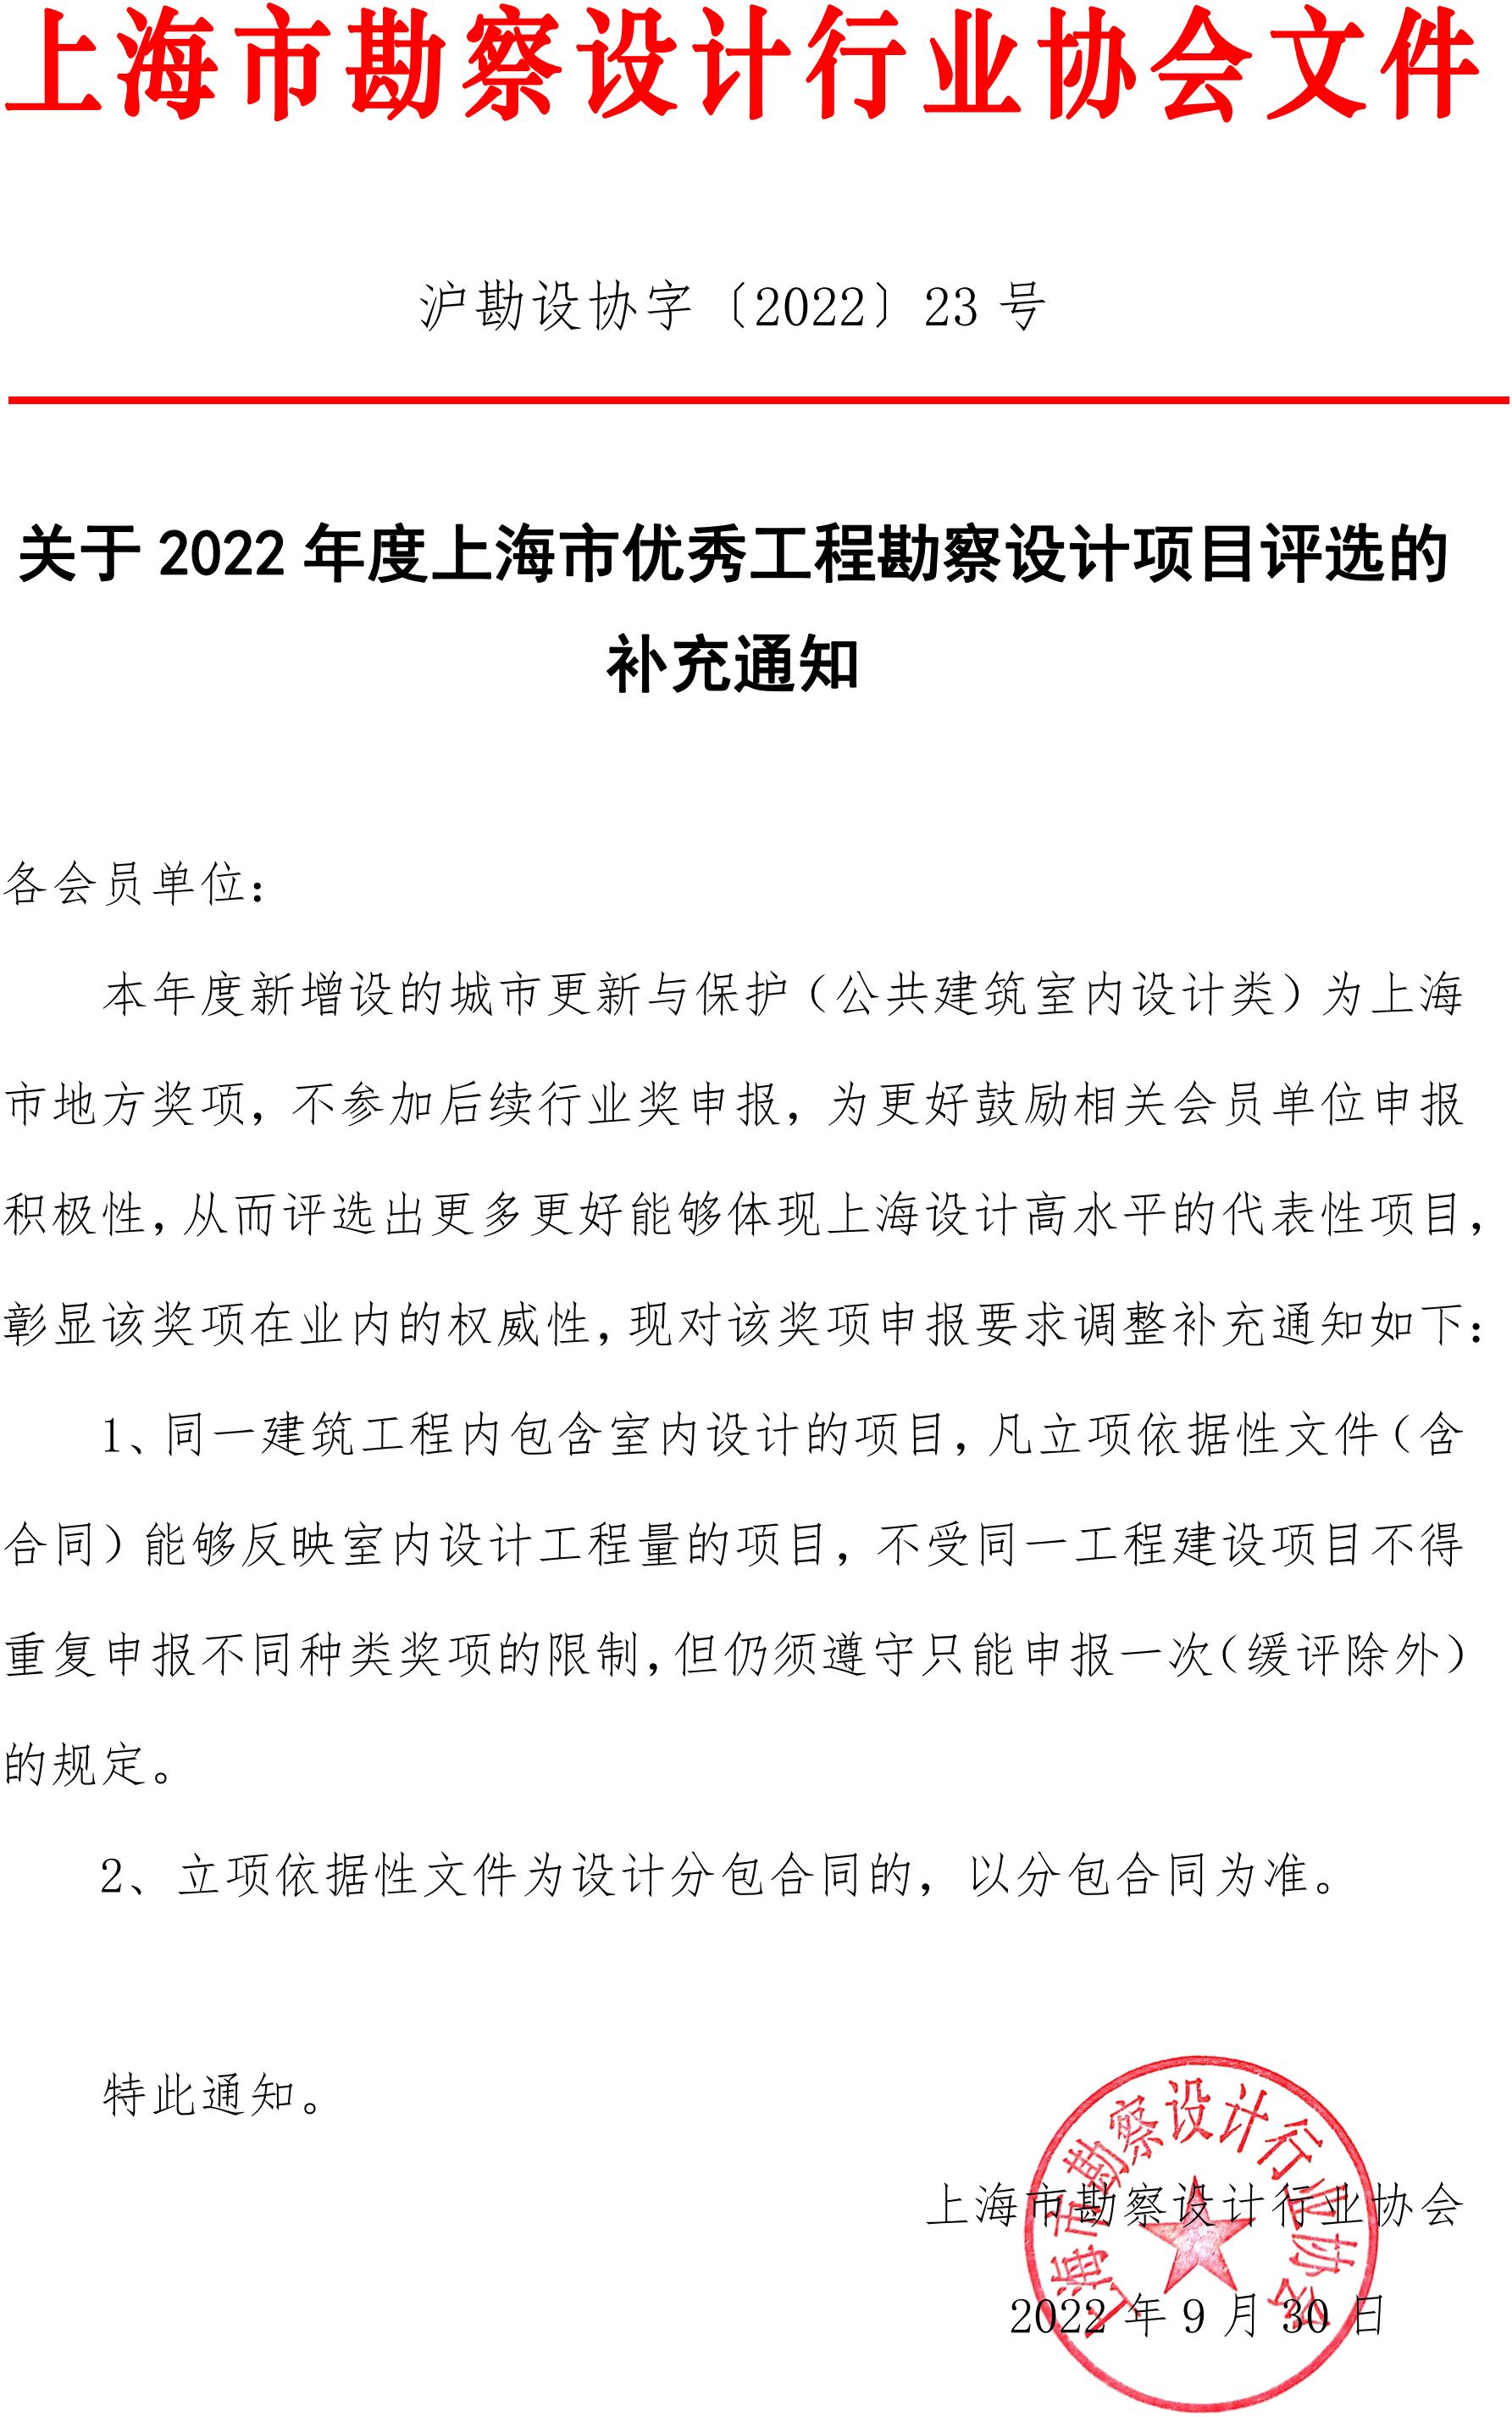 关于2022年度上海市优秀工程勘察设计项目评选的补充通知(9.jpg